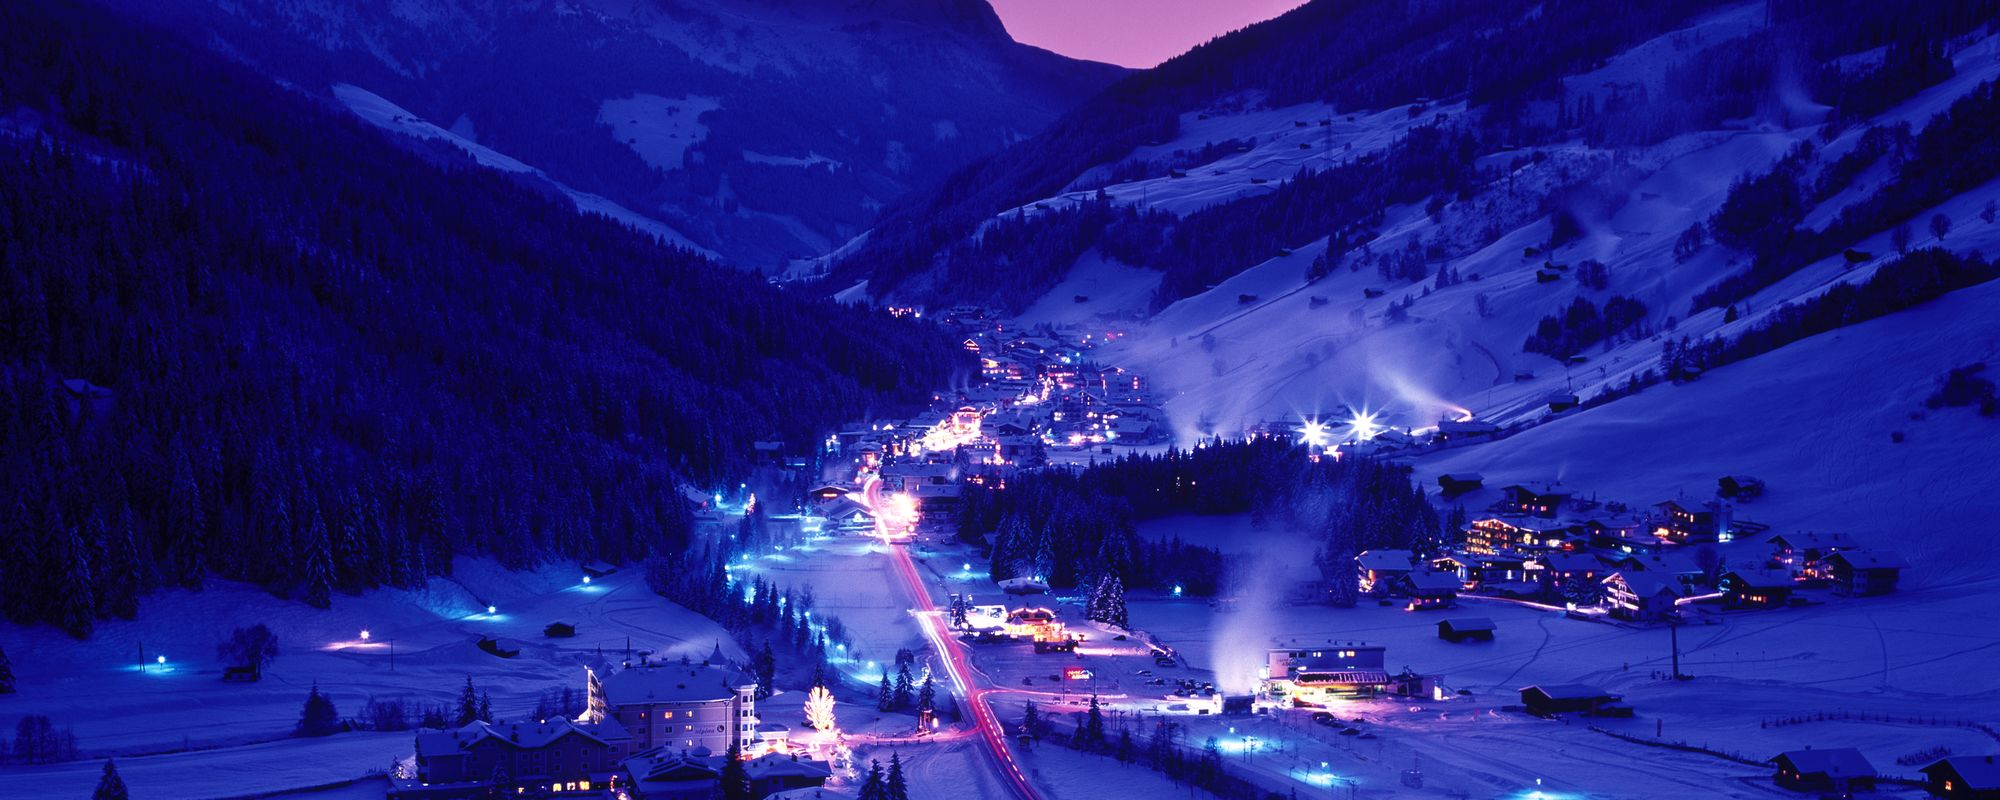 Spektakuläre Nachtaufnahme des tief verschneiten Winterdorfes Gerlos mit violetter Lichtstimmung und bei Vollmond